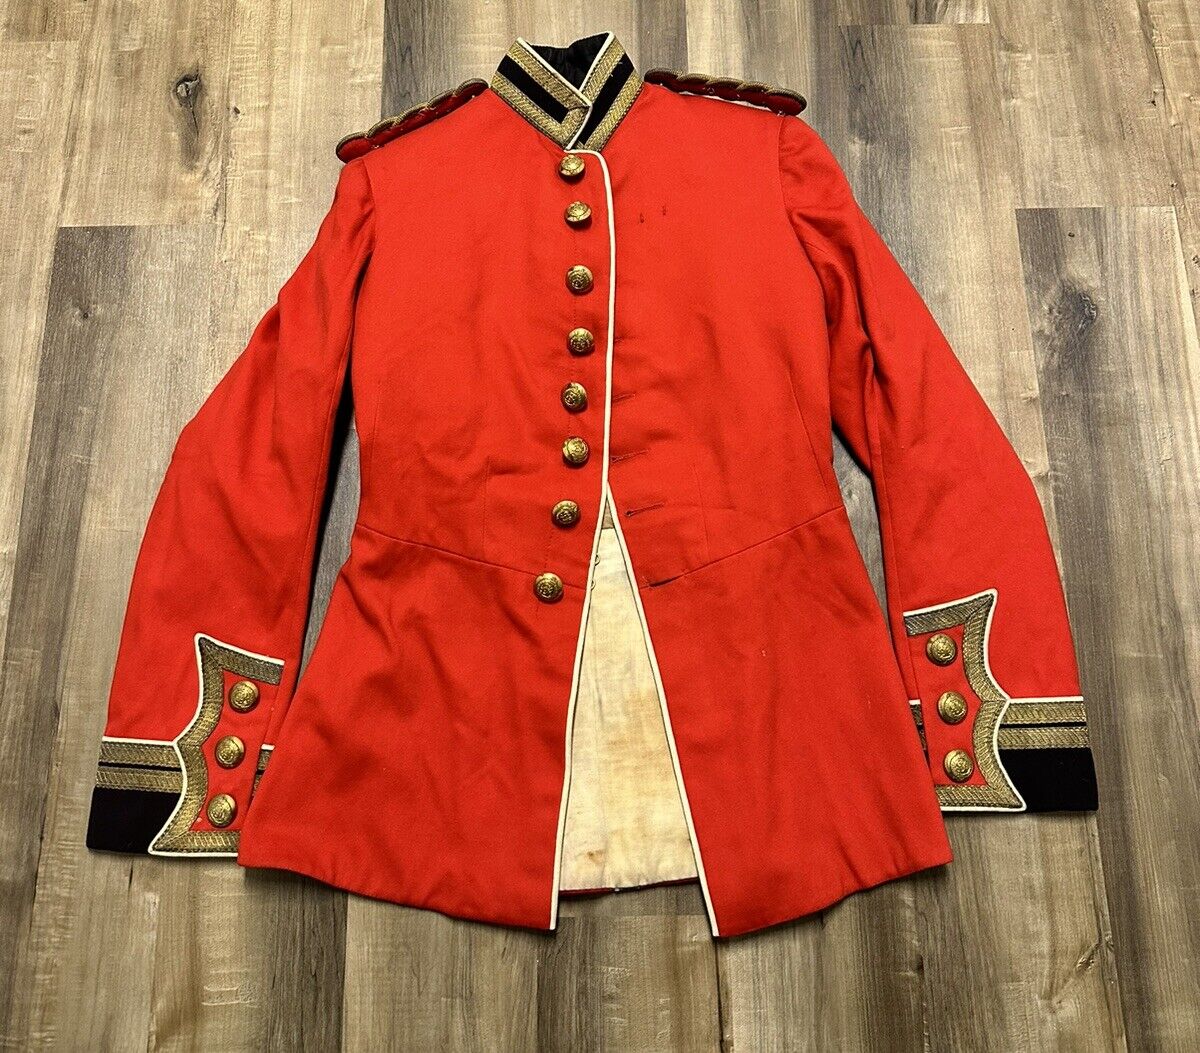 Original RARE WW1 British Army Infantry Red Dress Uniform 1912 Tagged RARE